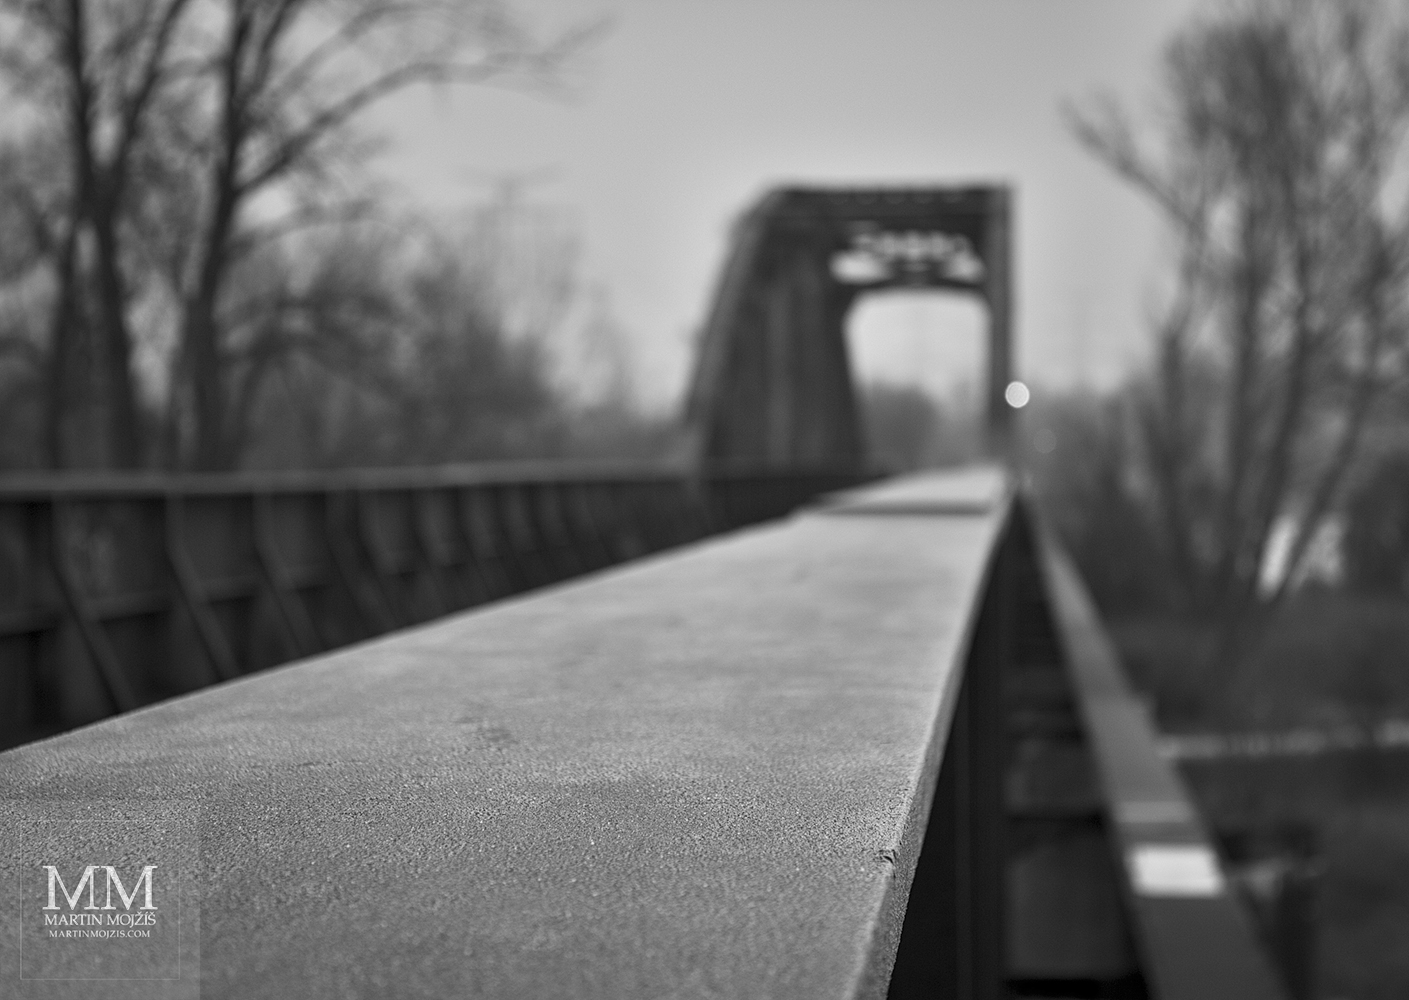 Zábradlí ocelového železničního mostu pokryté jinovatkou. Umělecká černobílá fotografie Martina Mojžíše s názvem ZIMA.